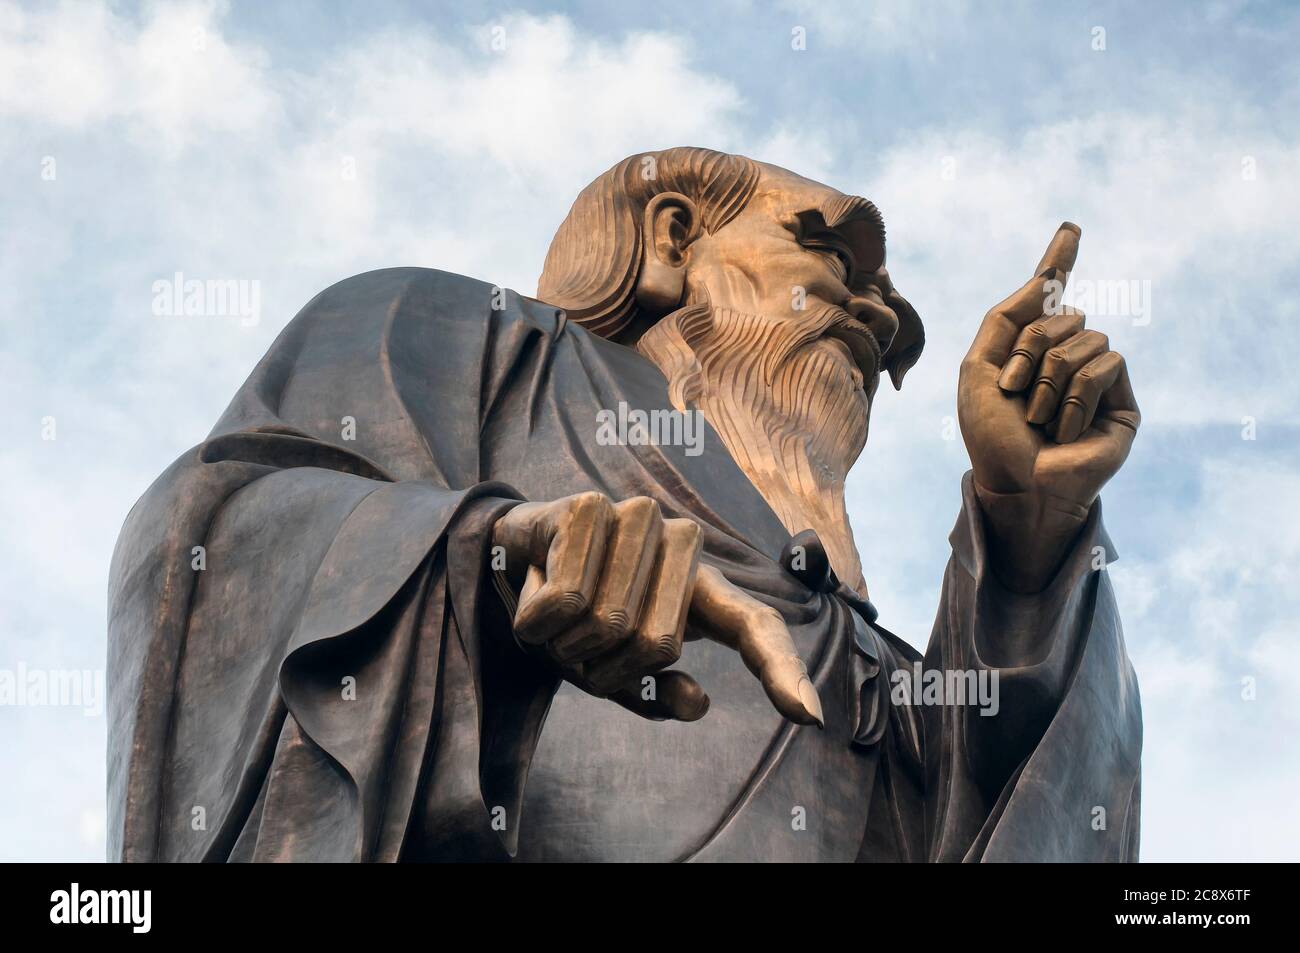 Le fondateur de taoïsme laozi grande statue dans le quartier pittoresque du palais de taiqing à Qingdao, en Chine, dans la province de shandong Banque D'Images